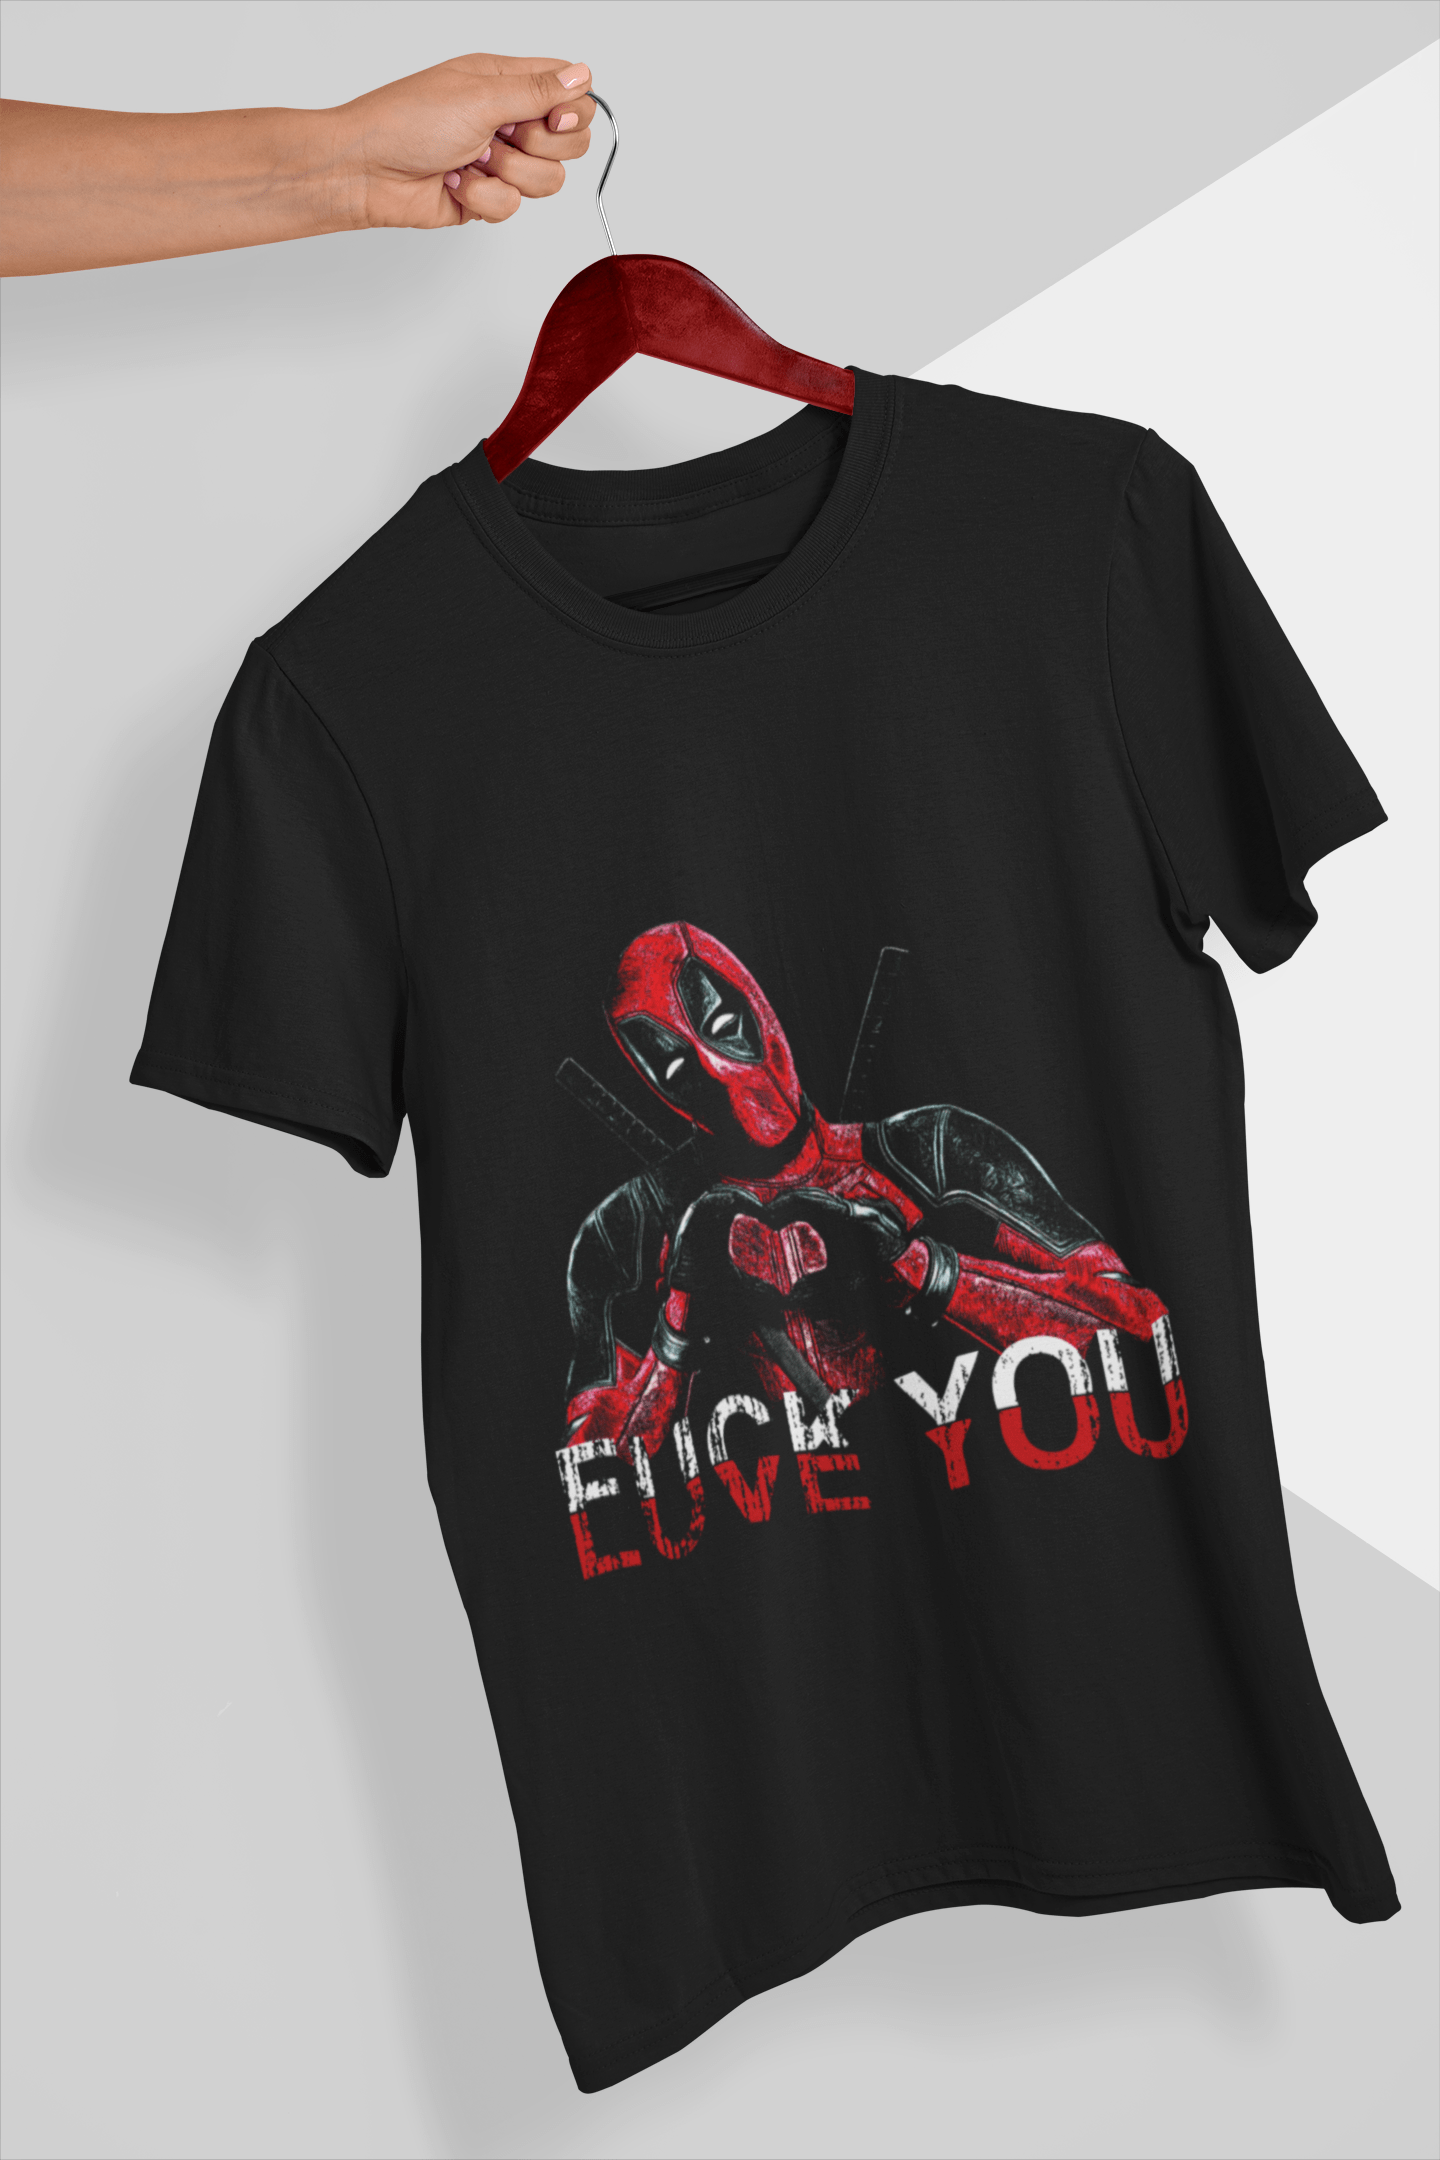 Deadpool Fuck / Love You T-Shirt